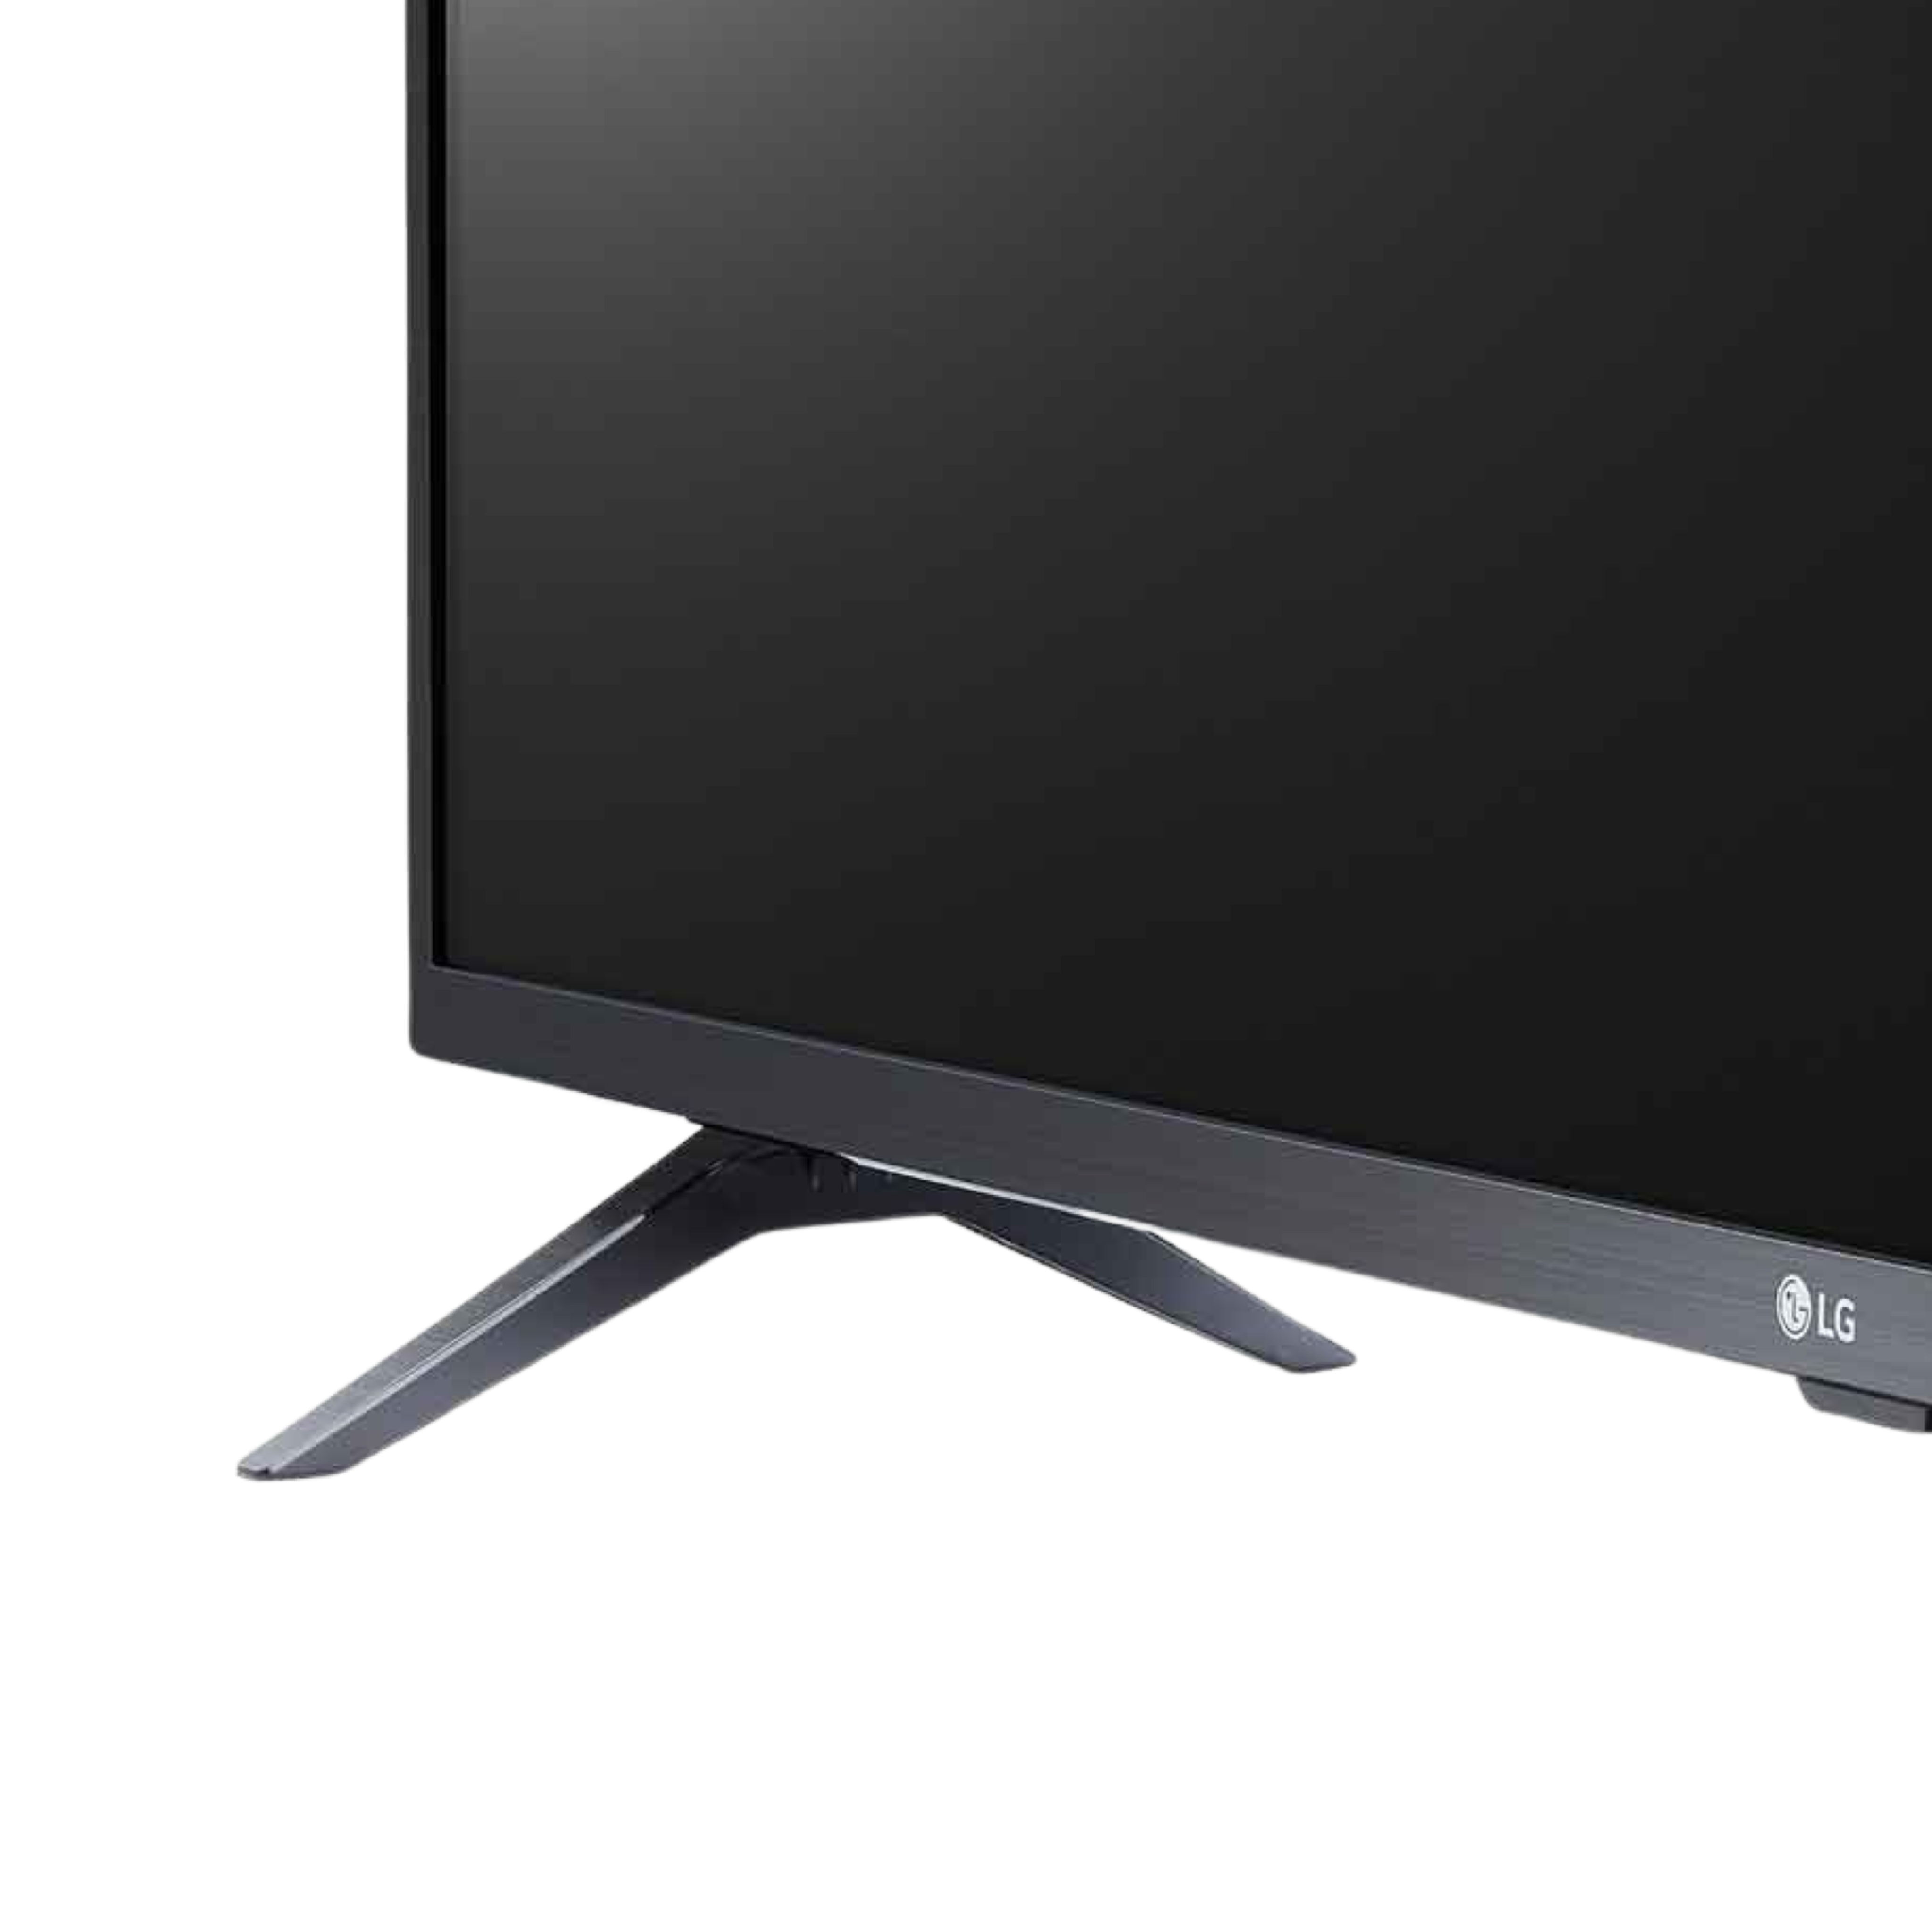 LG Smart FullHD LED TV 43inch LM6370